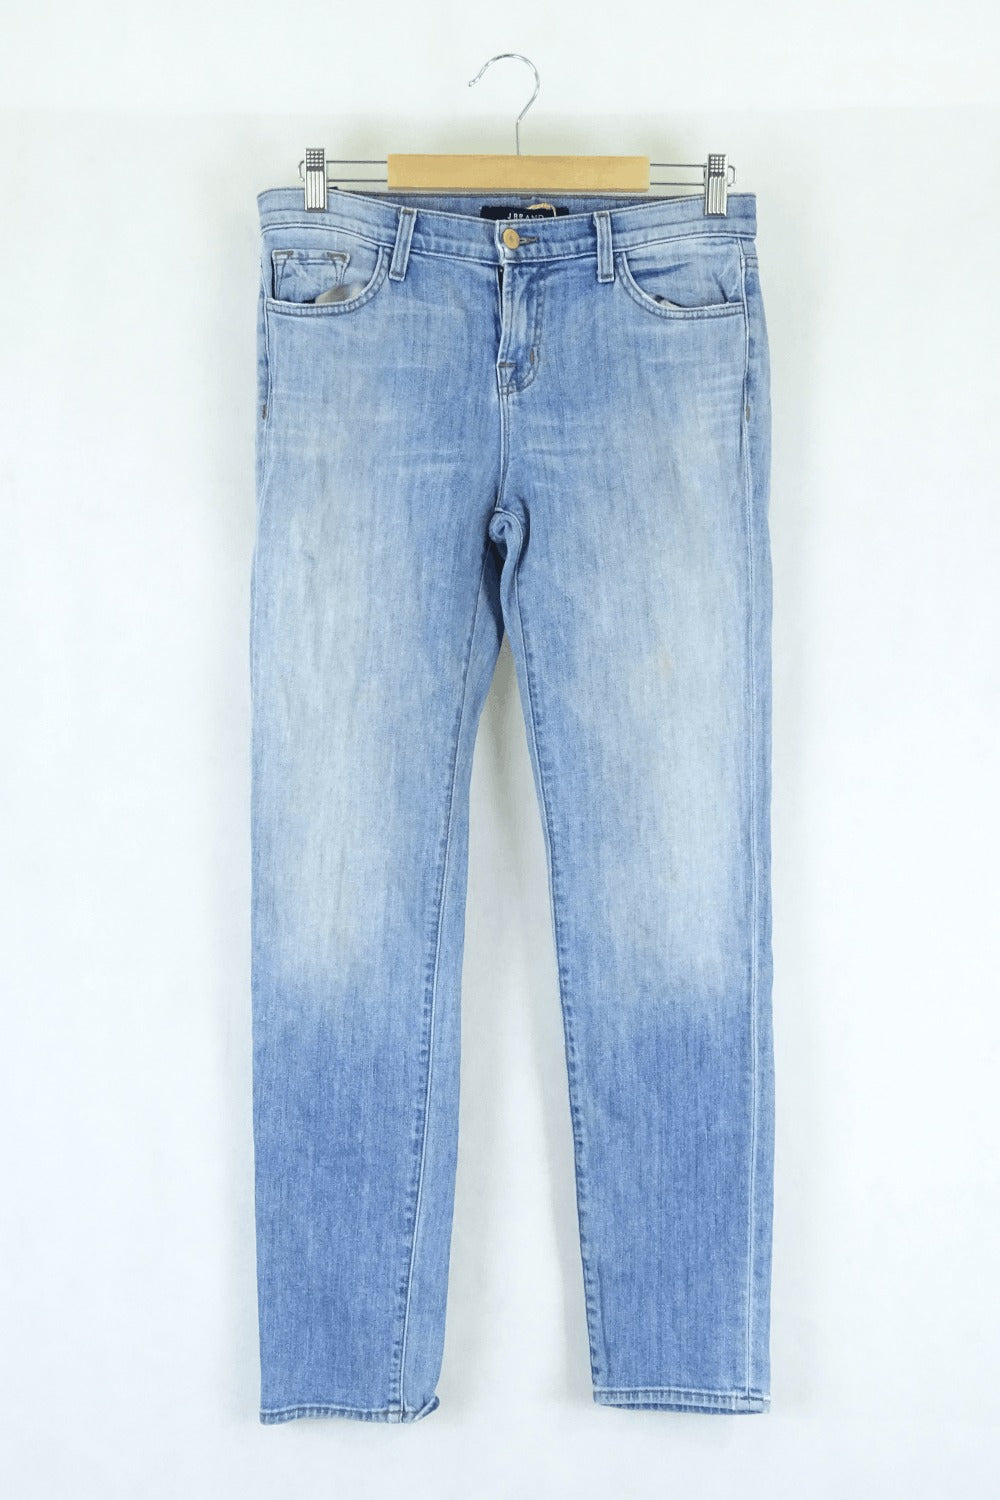 Jbrand Lightwash Denim Jeans 25